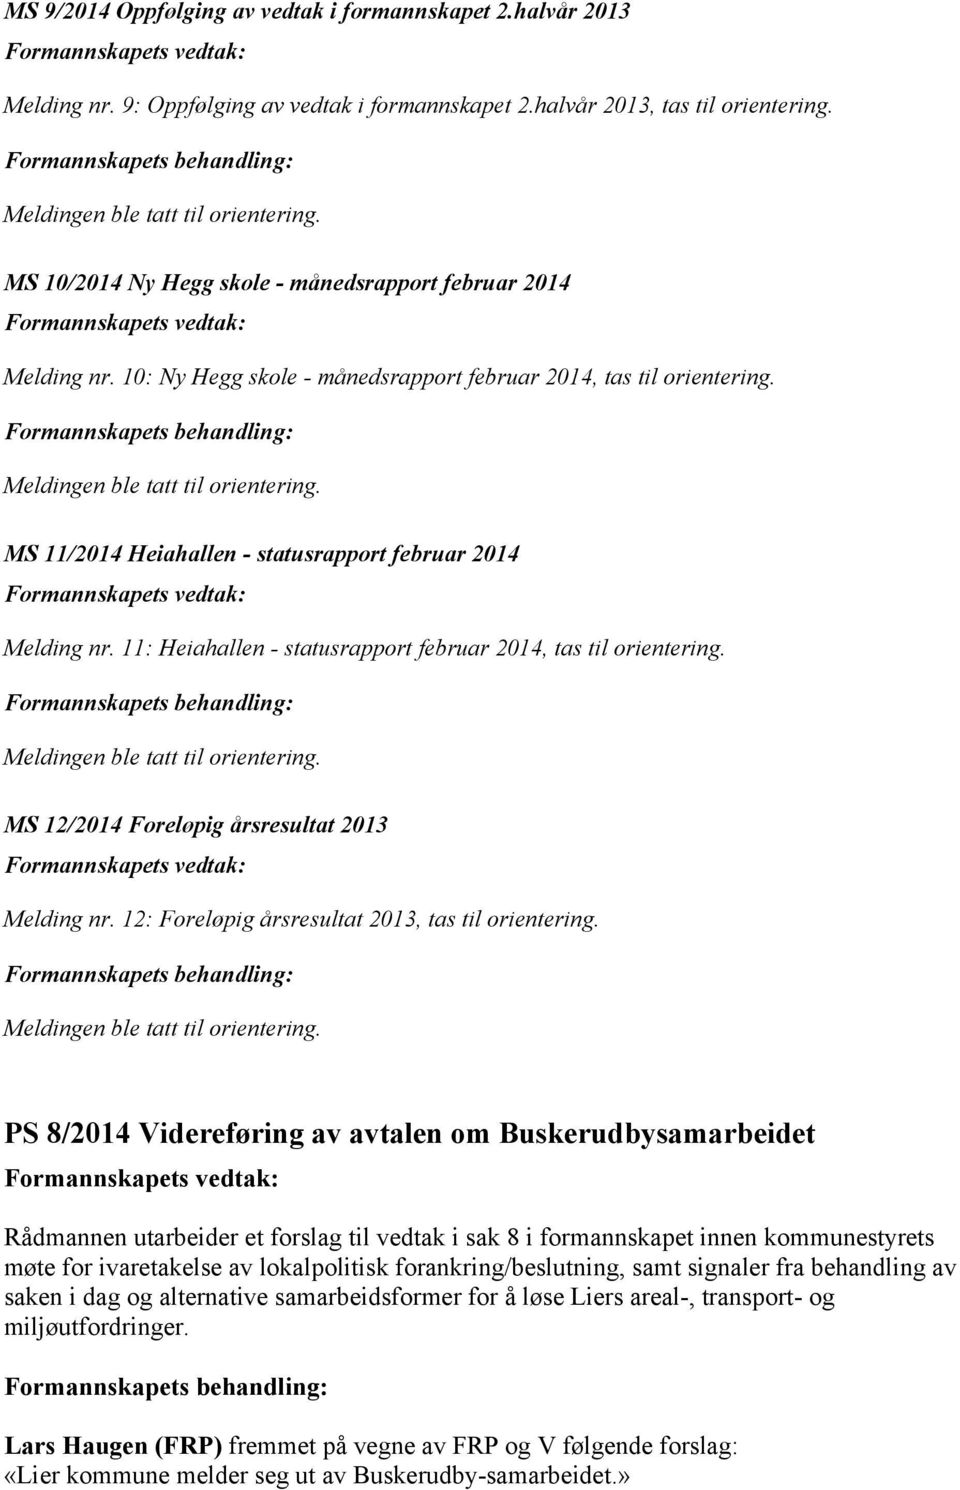 11: Heiahallen - statusrapport februar 2014, tas til orientering. MS 12/2014 Foreløpig årsresultat 2013 Melding nr. 12: Foreløpig årsresultat 2013, tas til orientering.